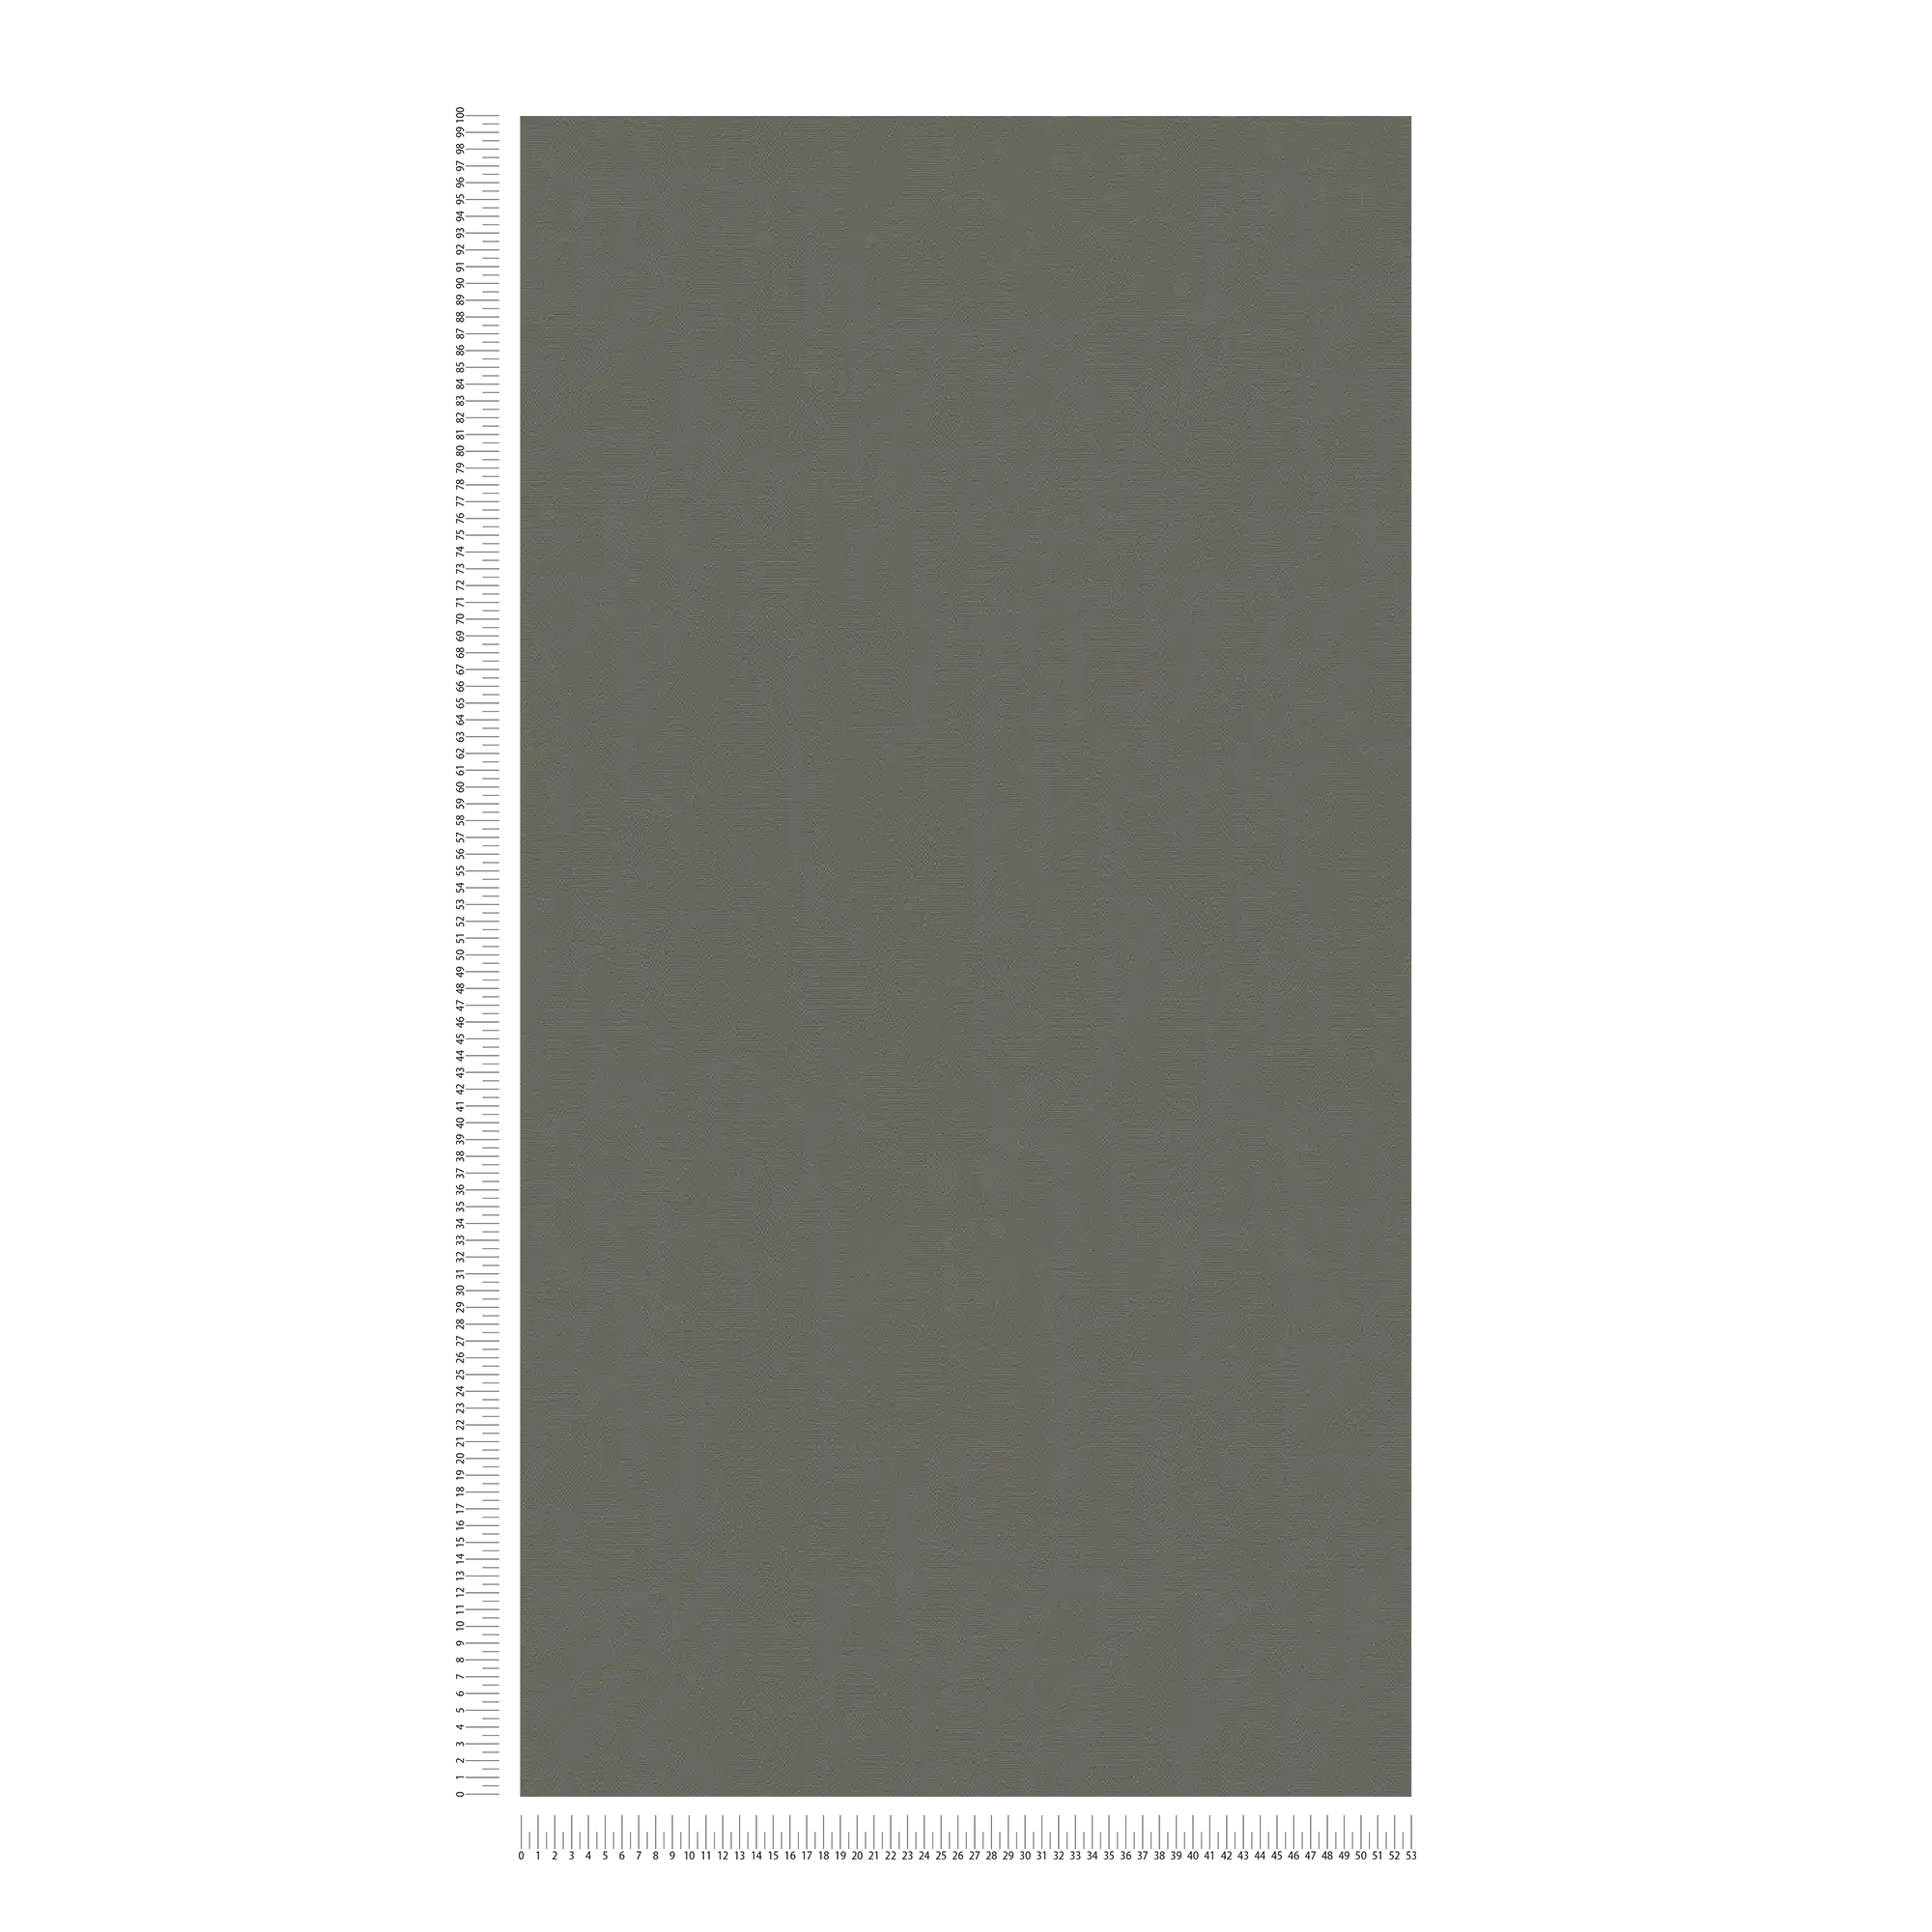             Papel pintado no tejido liso caqui oscuro, satinado - gris
        